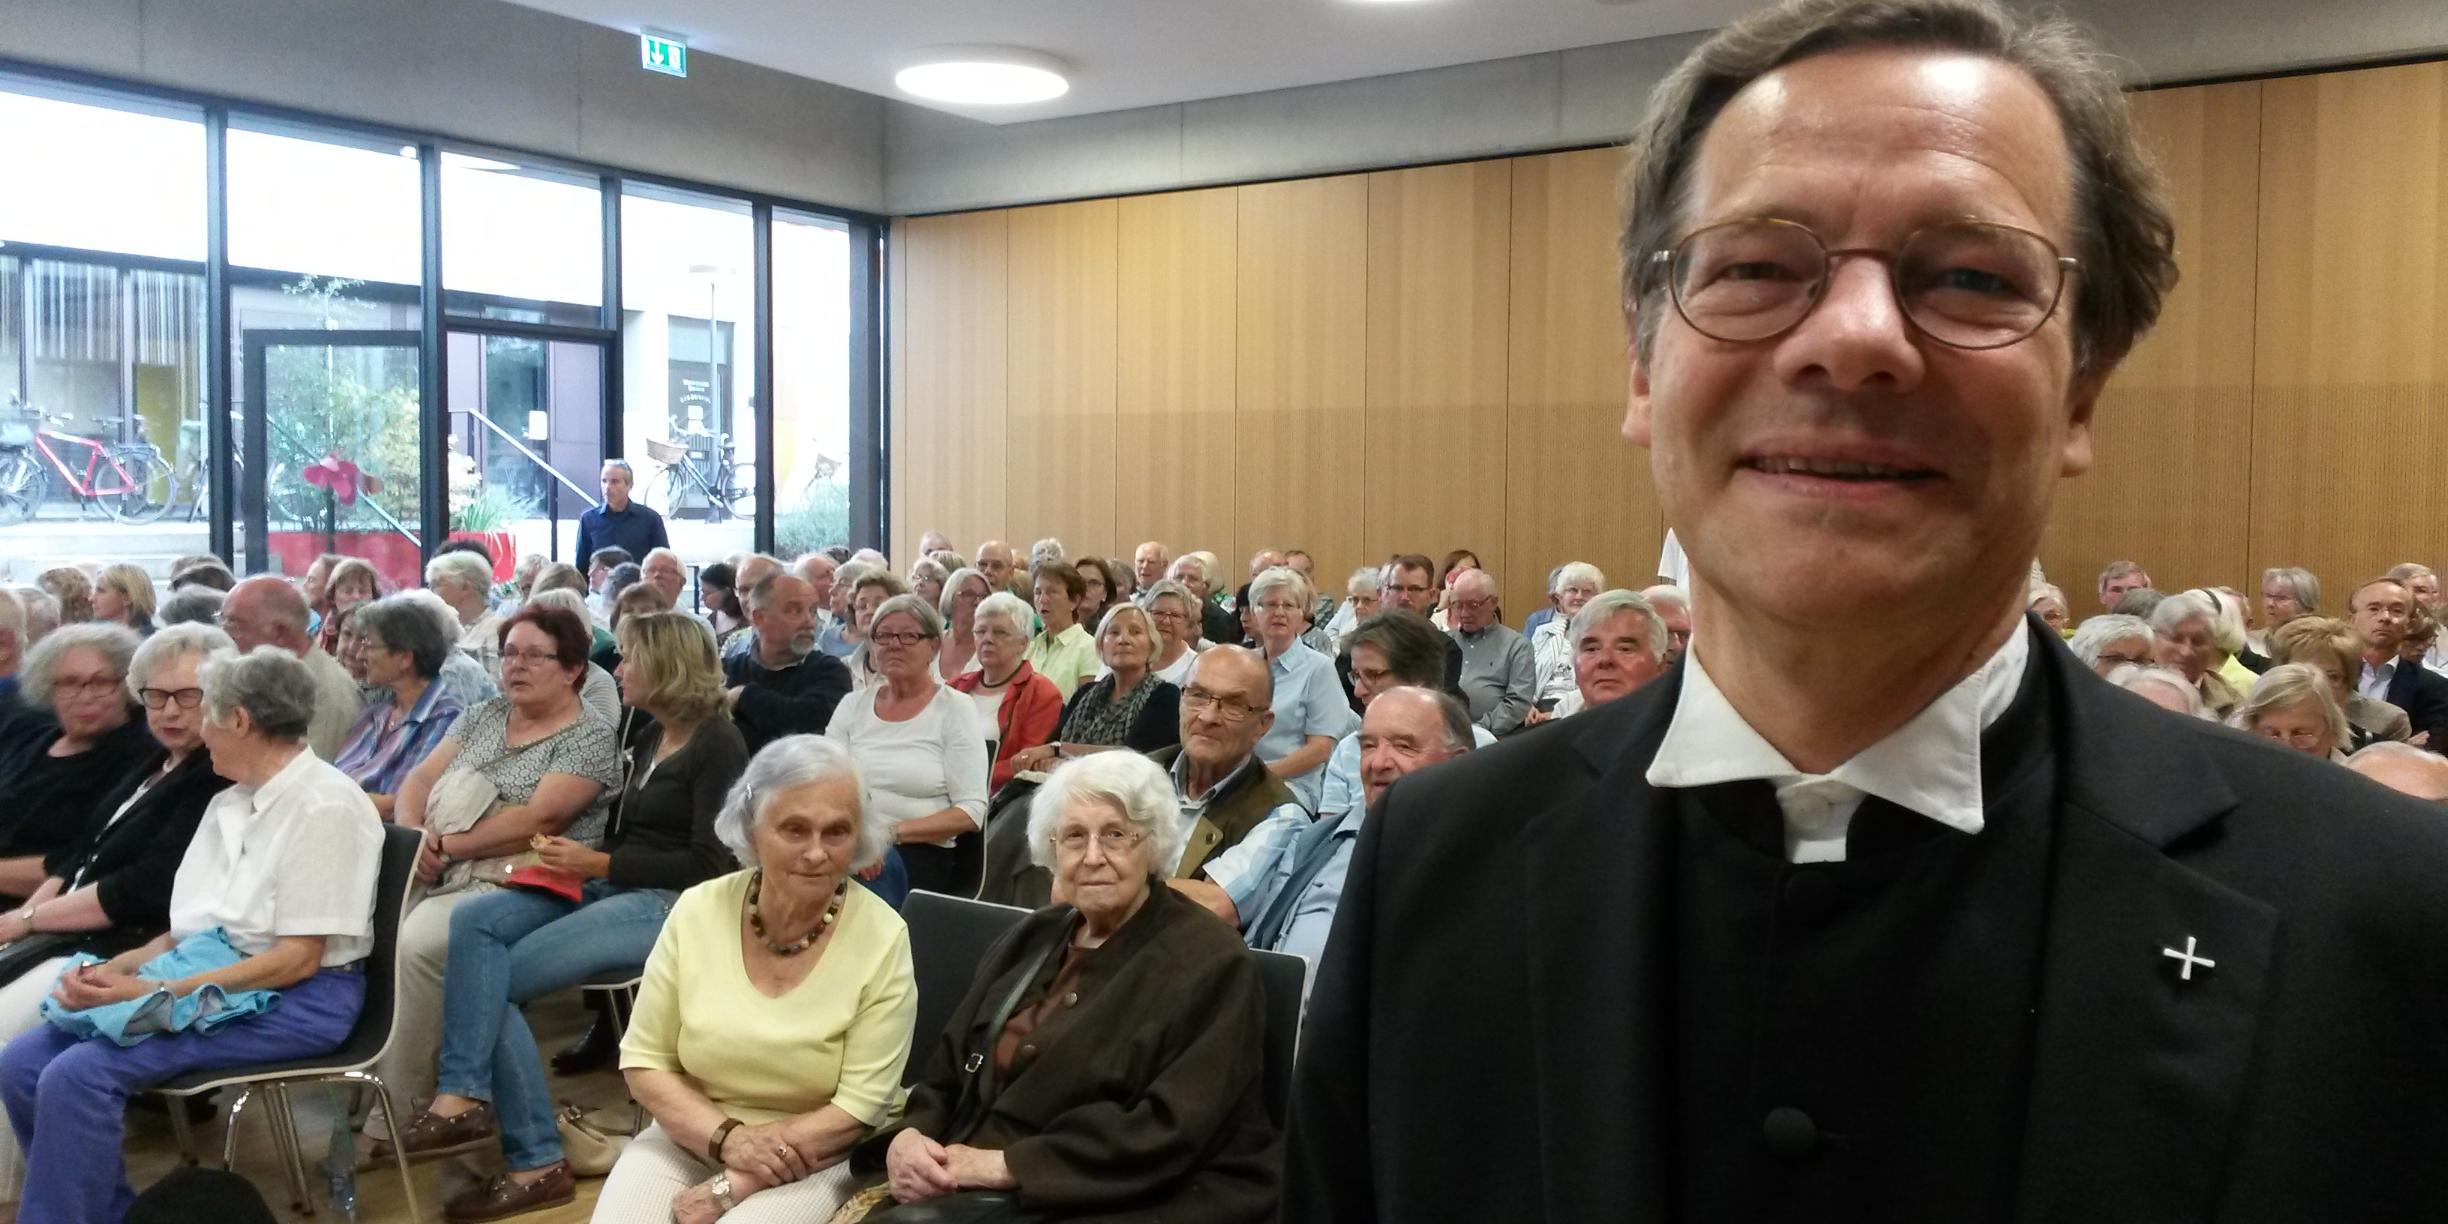 Bischof Dröge sprach vor über 200 Zuhörerinnen und Zuhörern